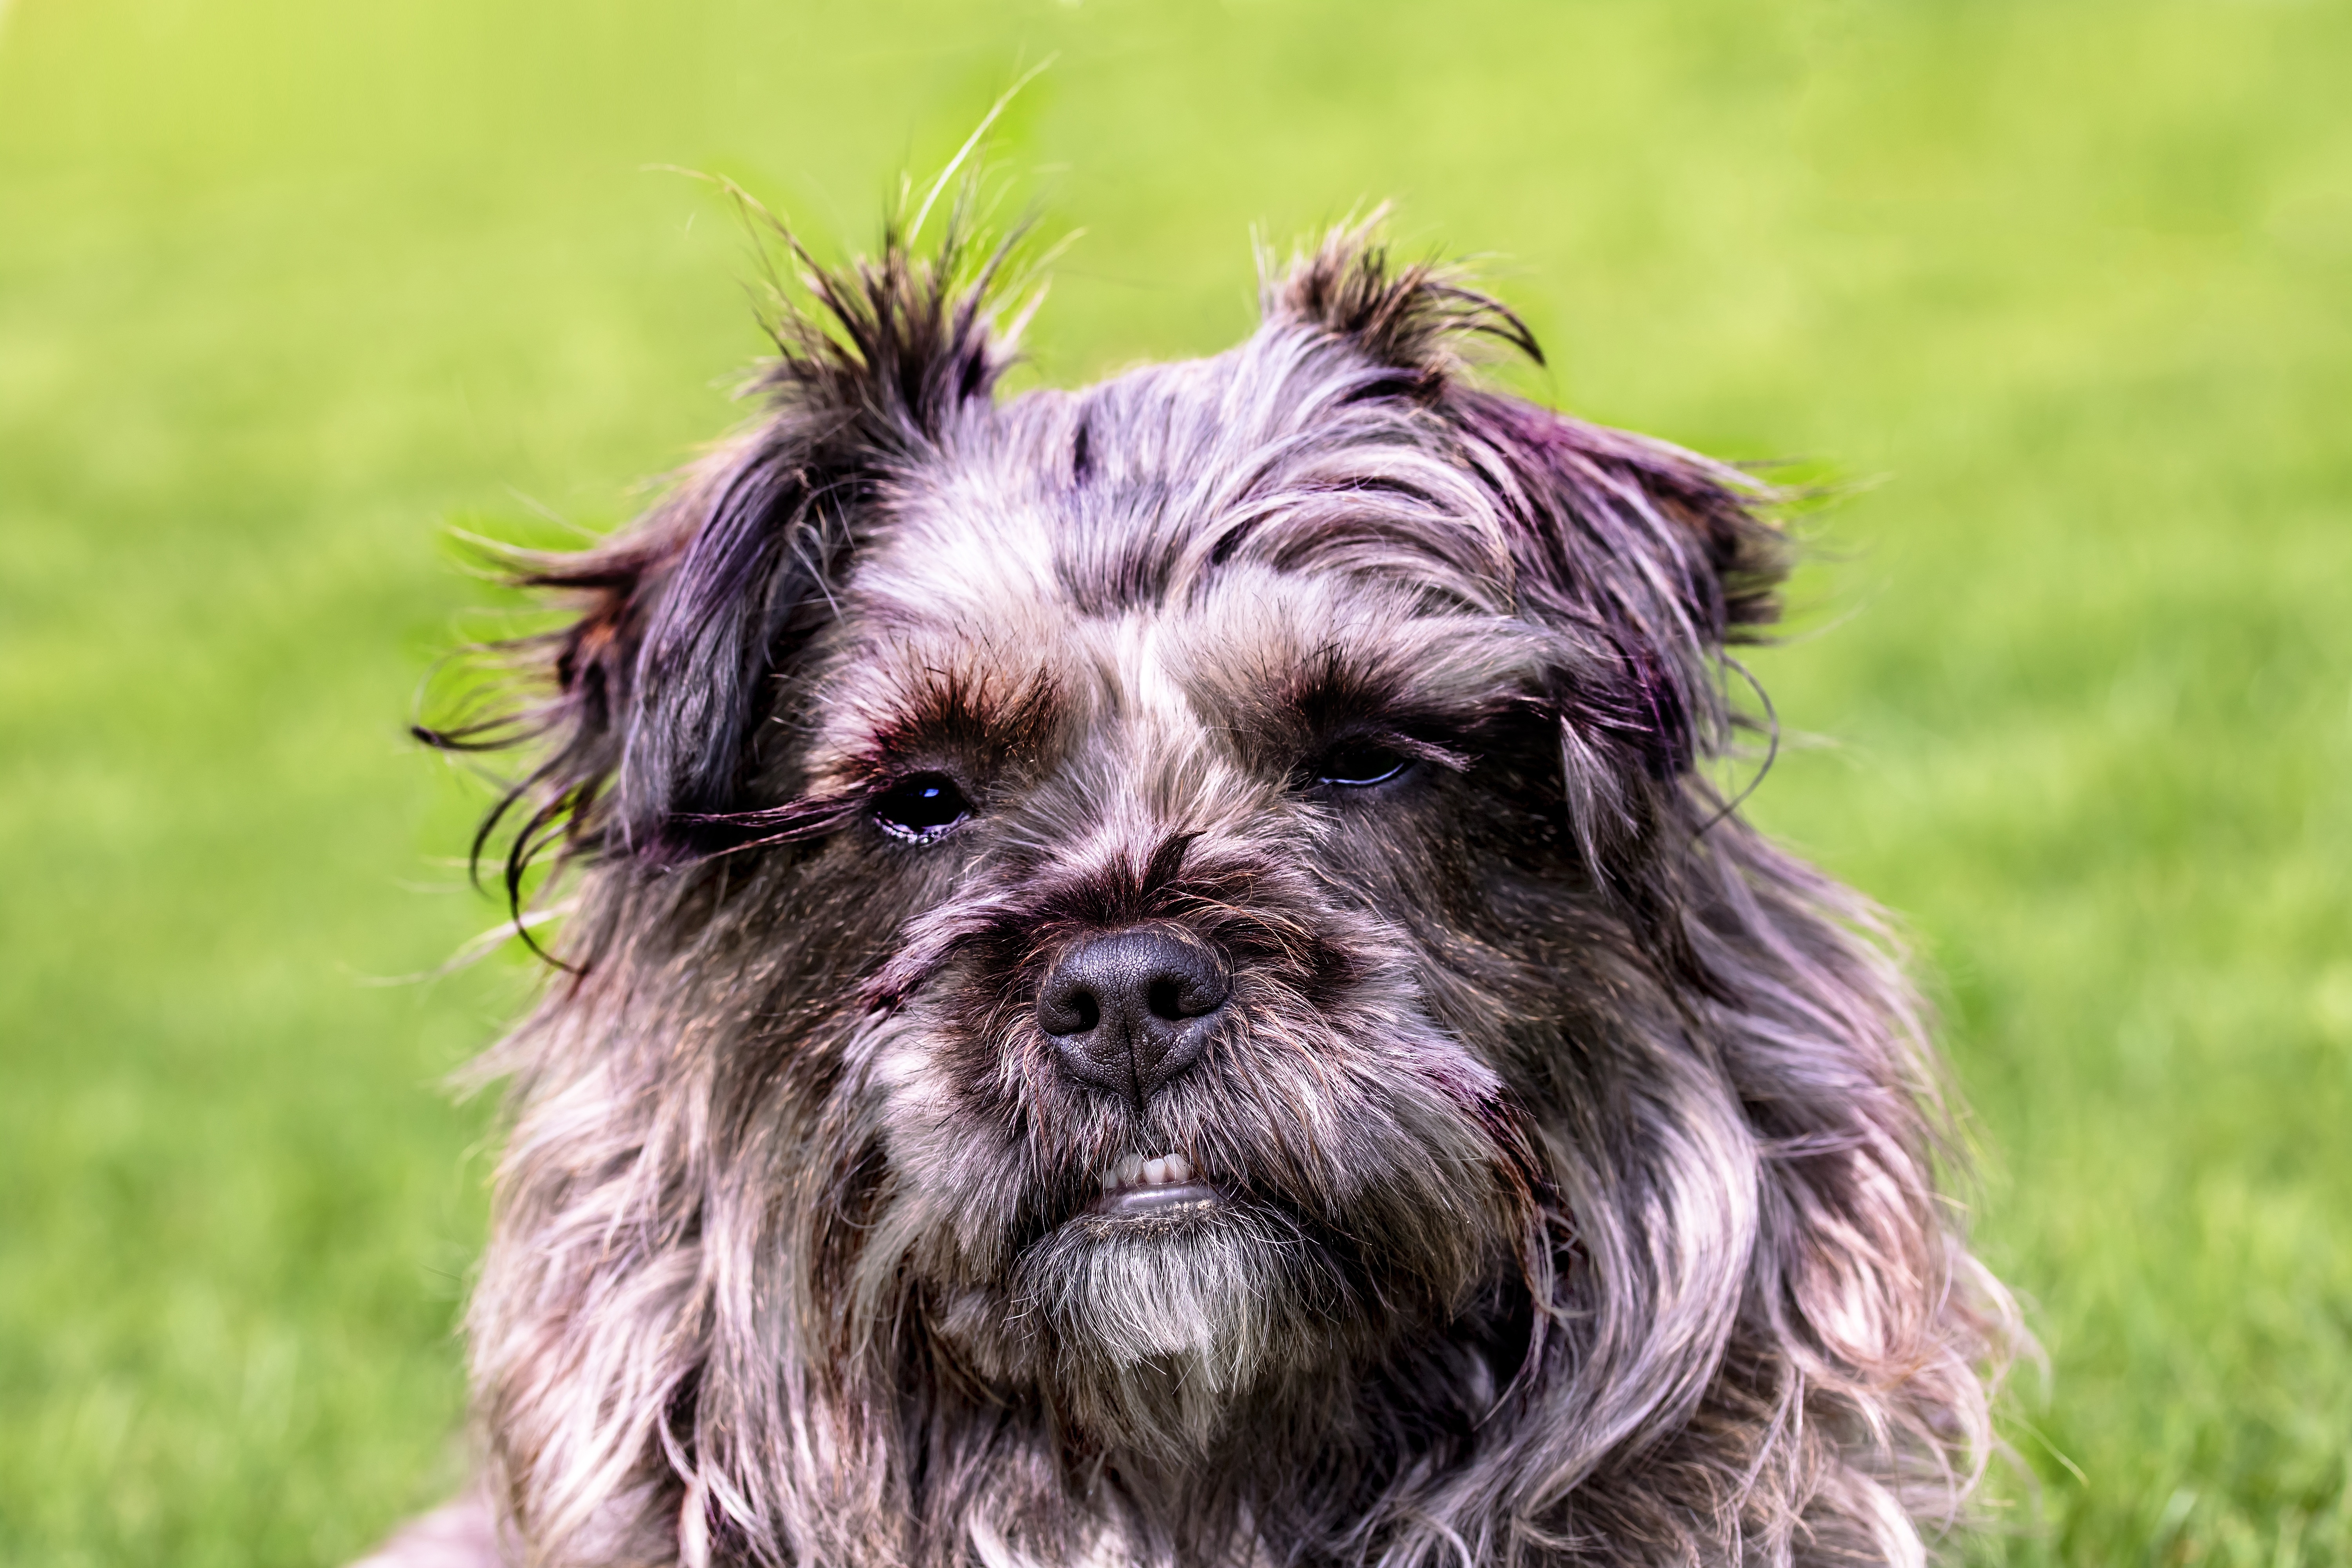 免费照片背景是草坪上一只毛茸茸的狗的肖像。